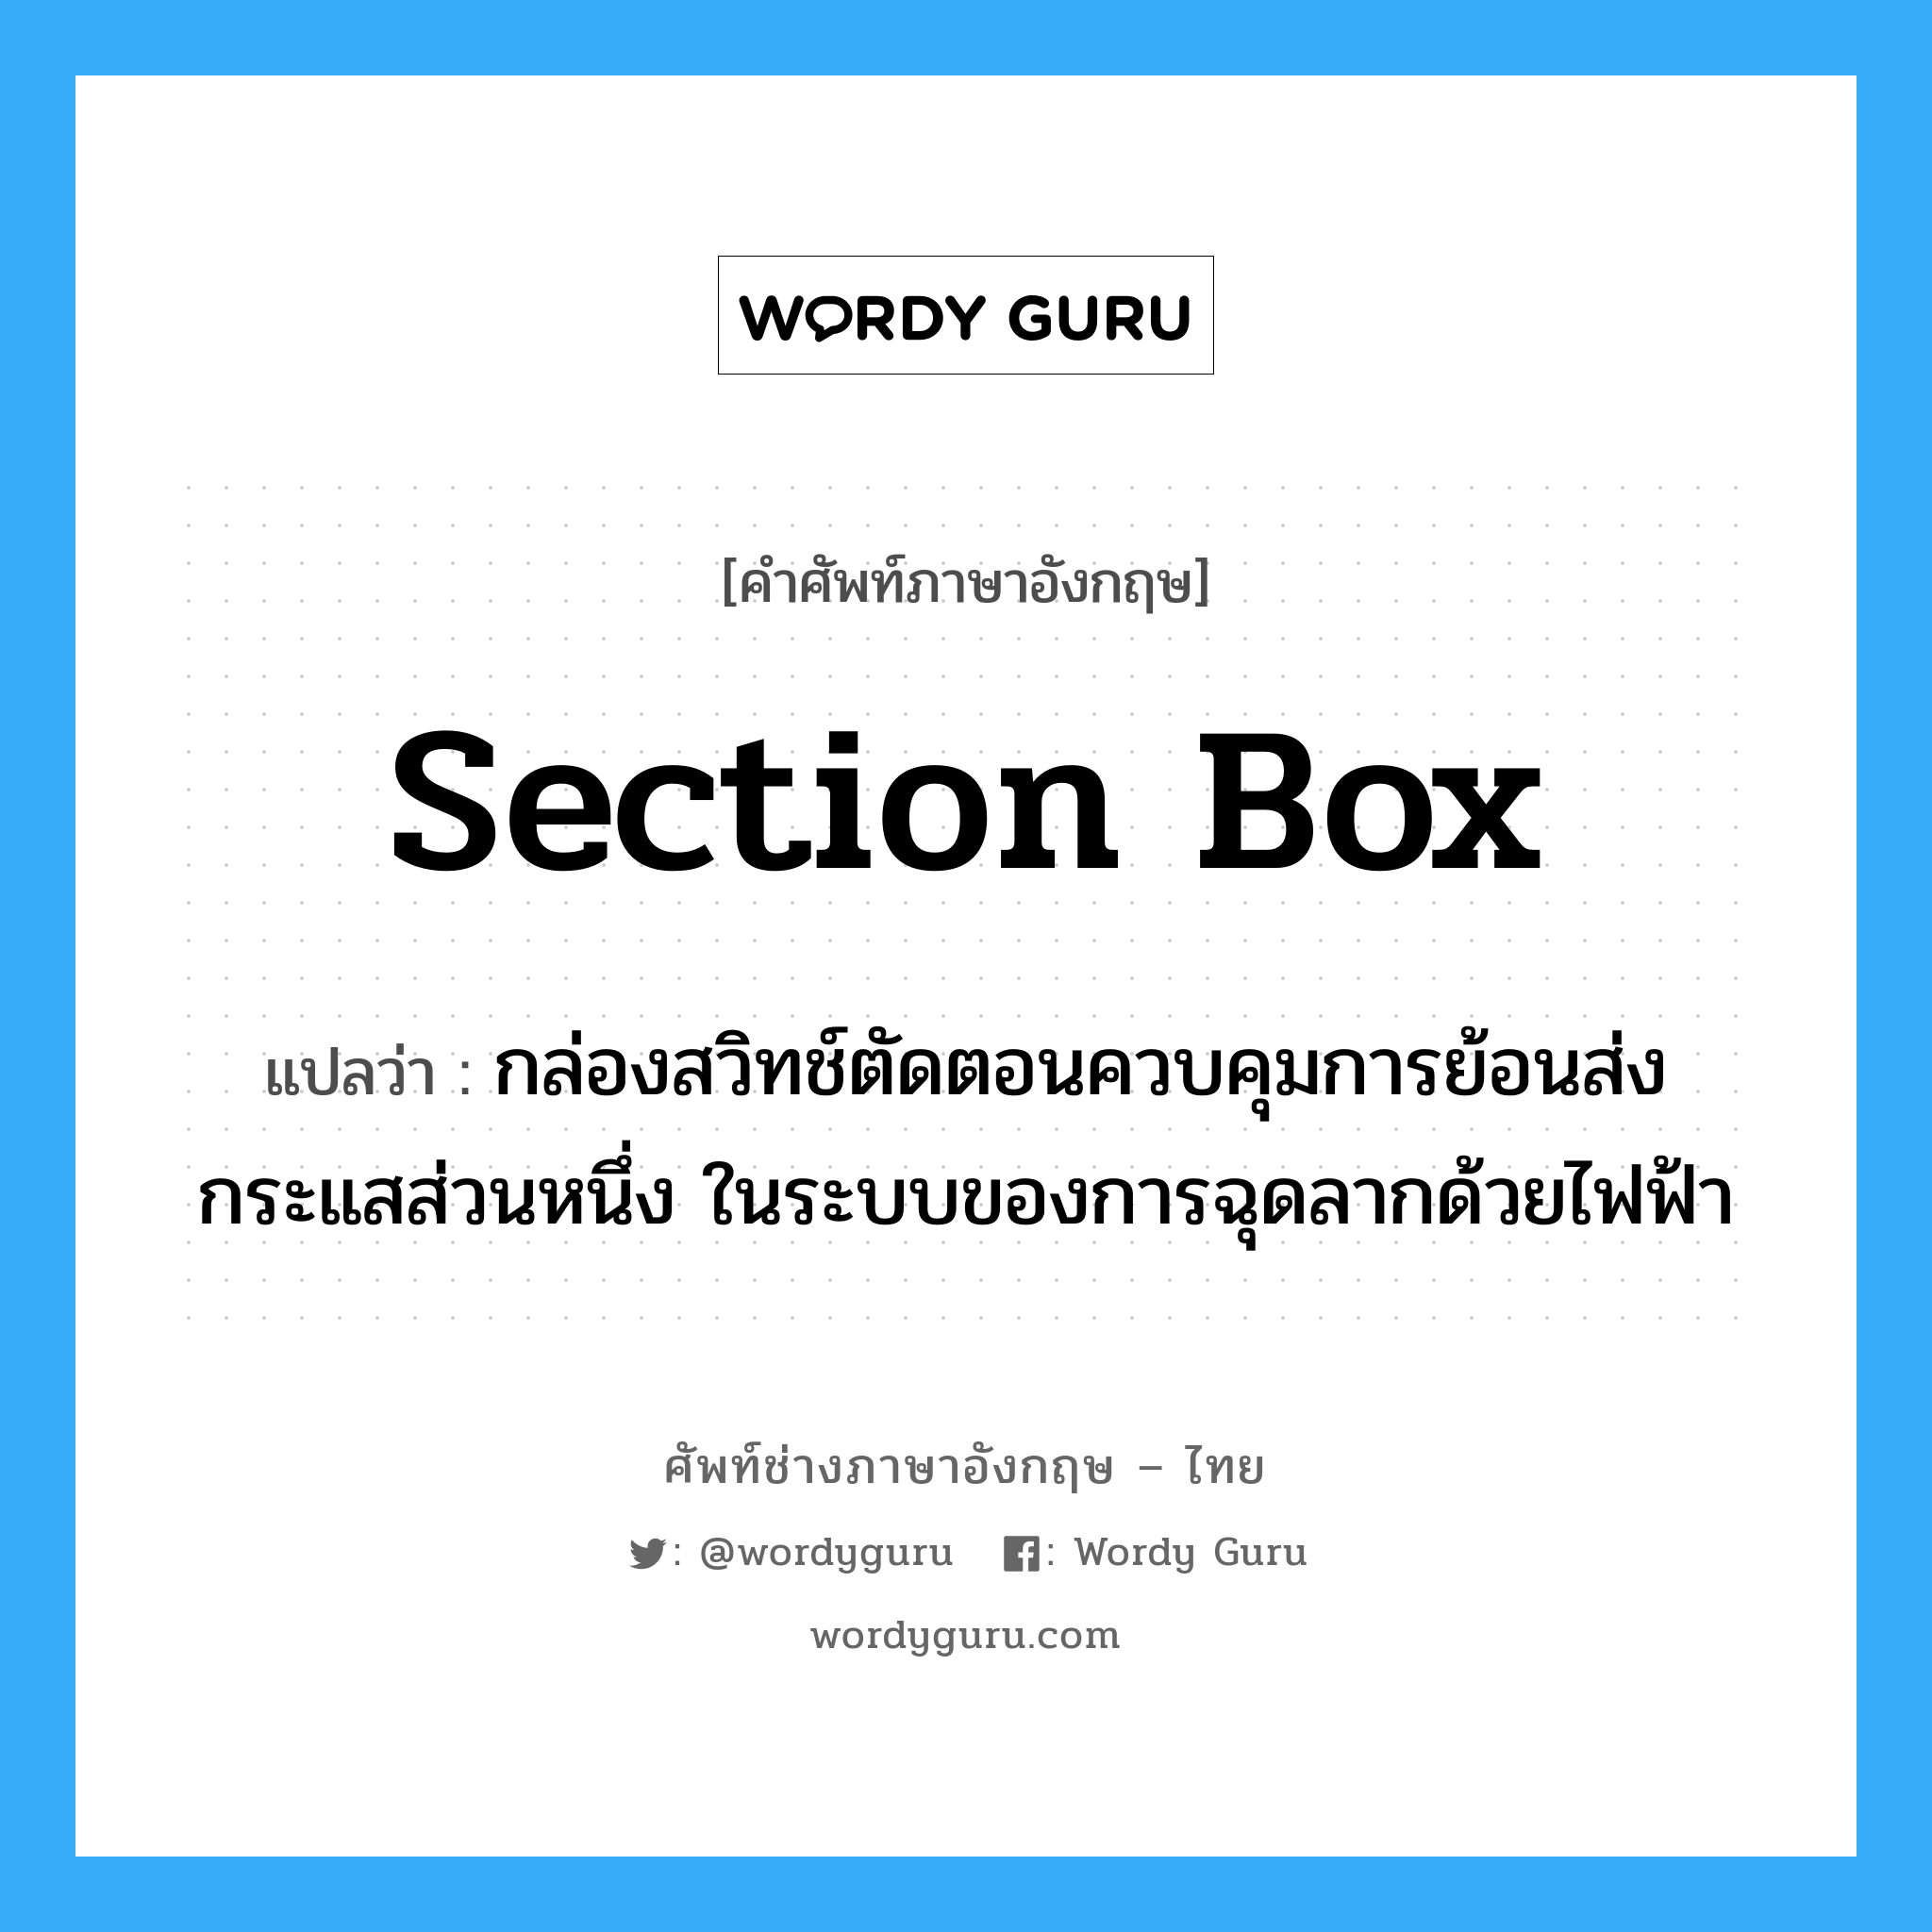 section box แปลว่า?, คำศัพท์ช่างภาษาอังกฤษ - ไทย section box คำศัพท์ภาษาอังกฤษ section box แปลว่า กล่องสวิทช์ตัดตอนควบคุมการย้อนส่งกระแสส่วนหนึ่ง ในระบบของการฉุดลากด้วยไฟฟ้า